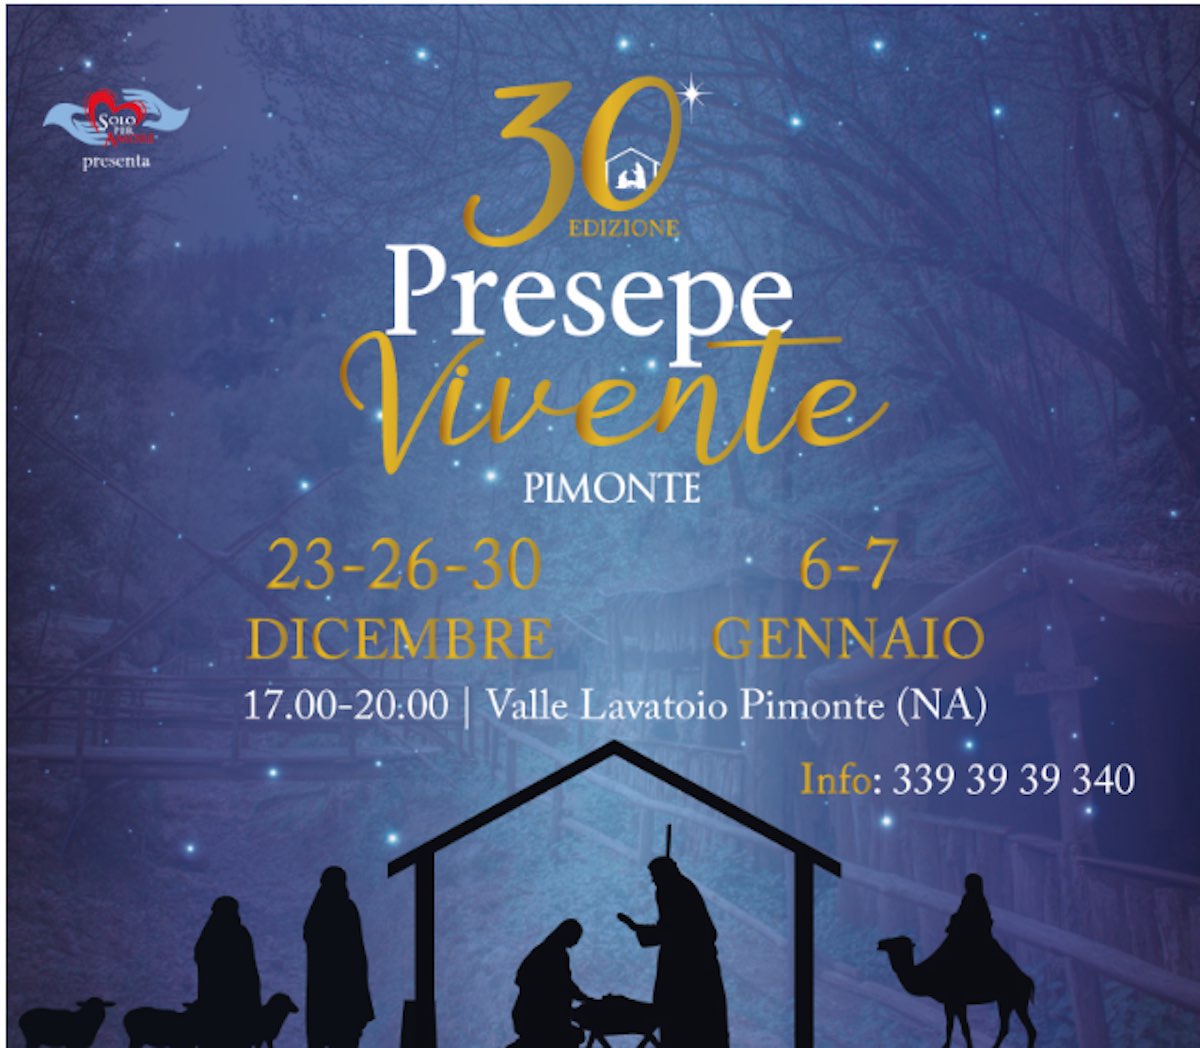 Pimonte ospita il presepe vivente: 30° edizione